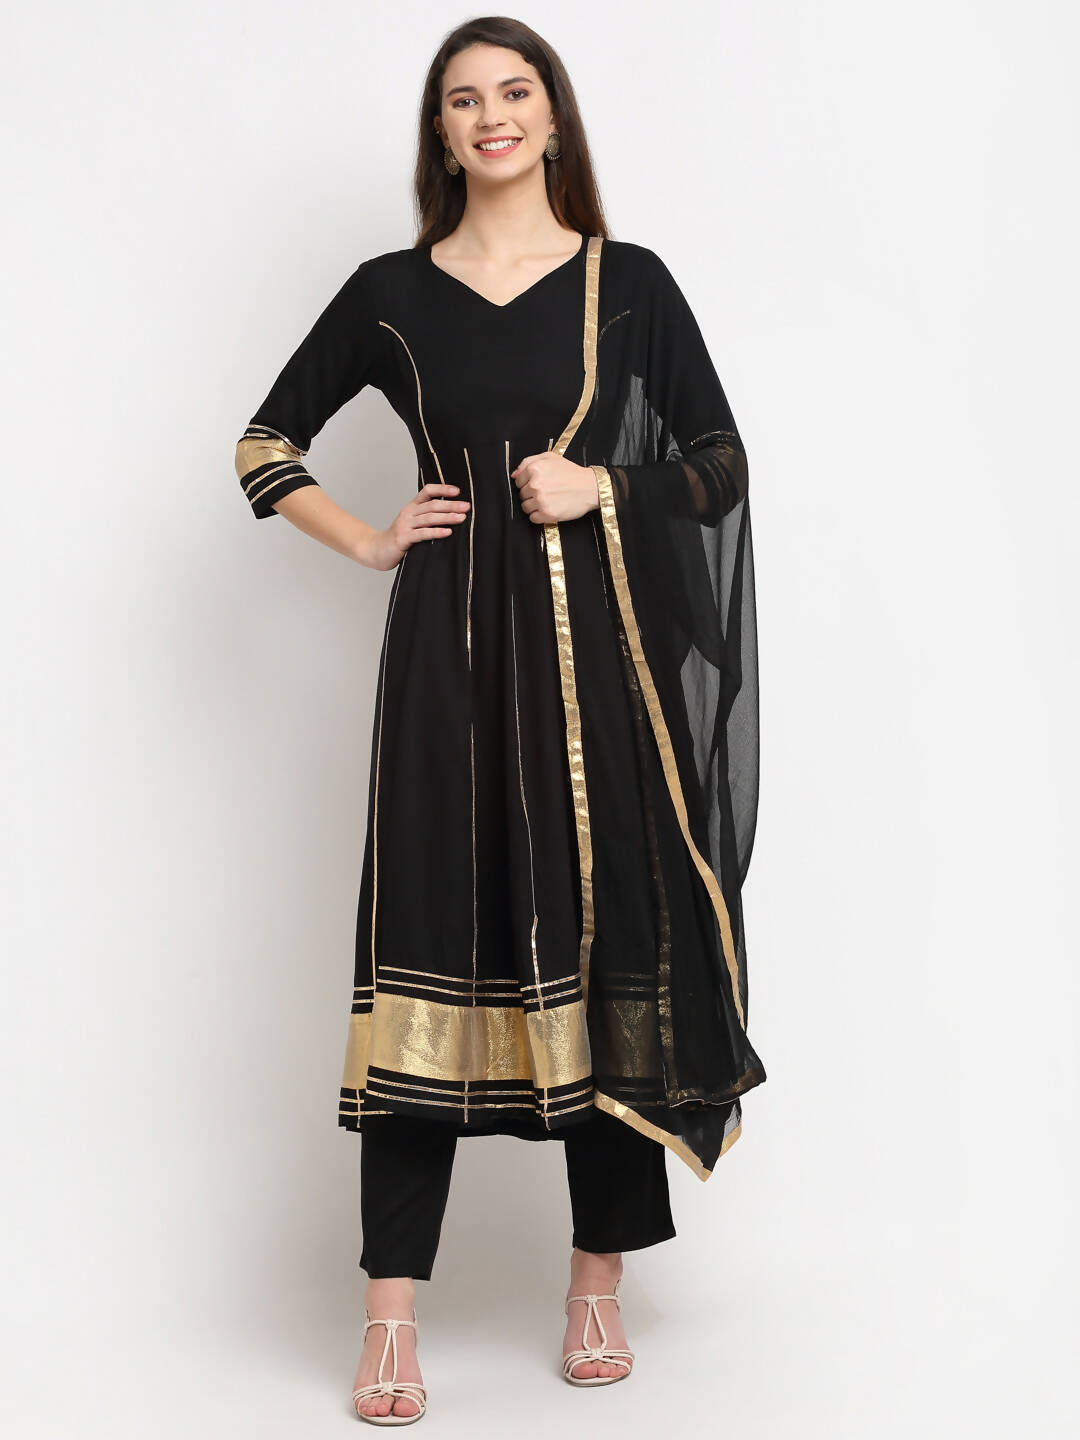 Georgette Plain Anarkali Suit In Black Color With Dupatta – Ville Fashions